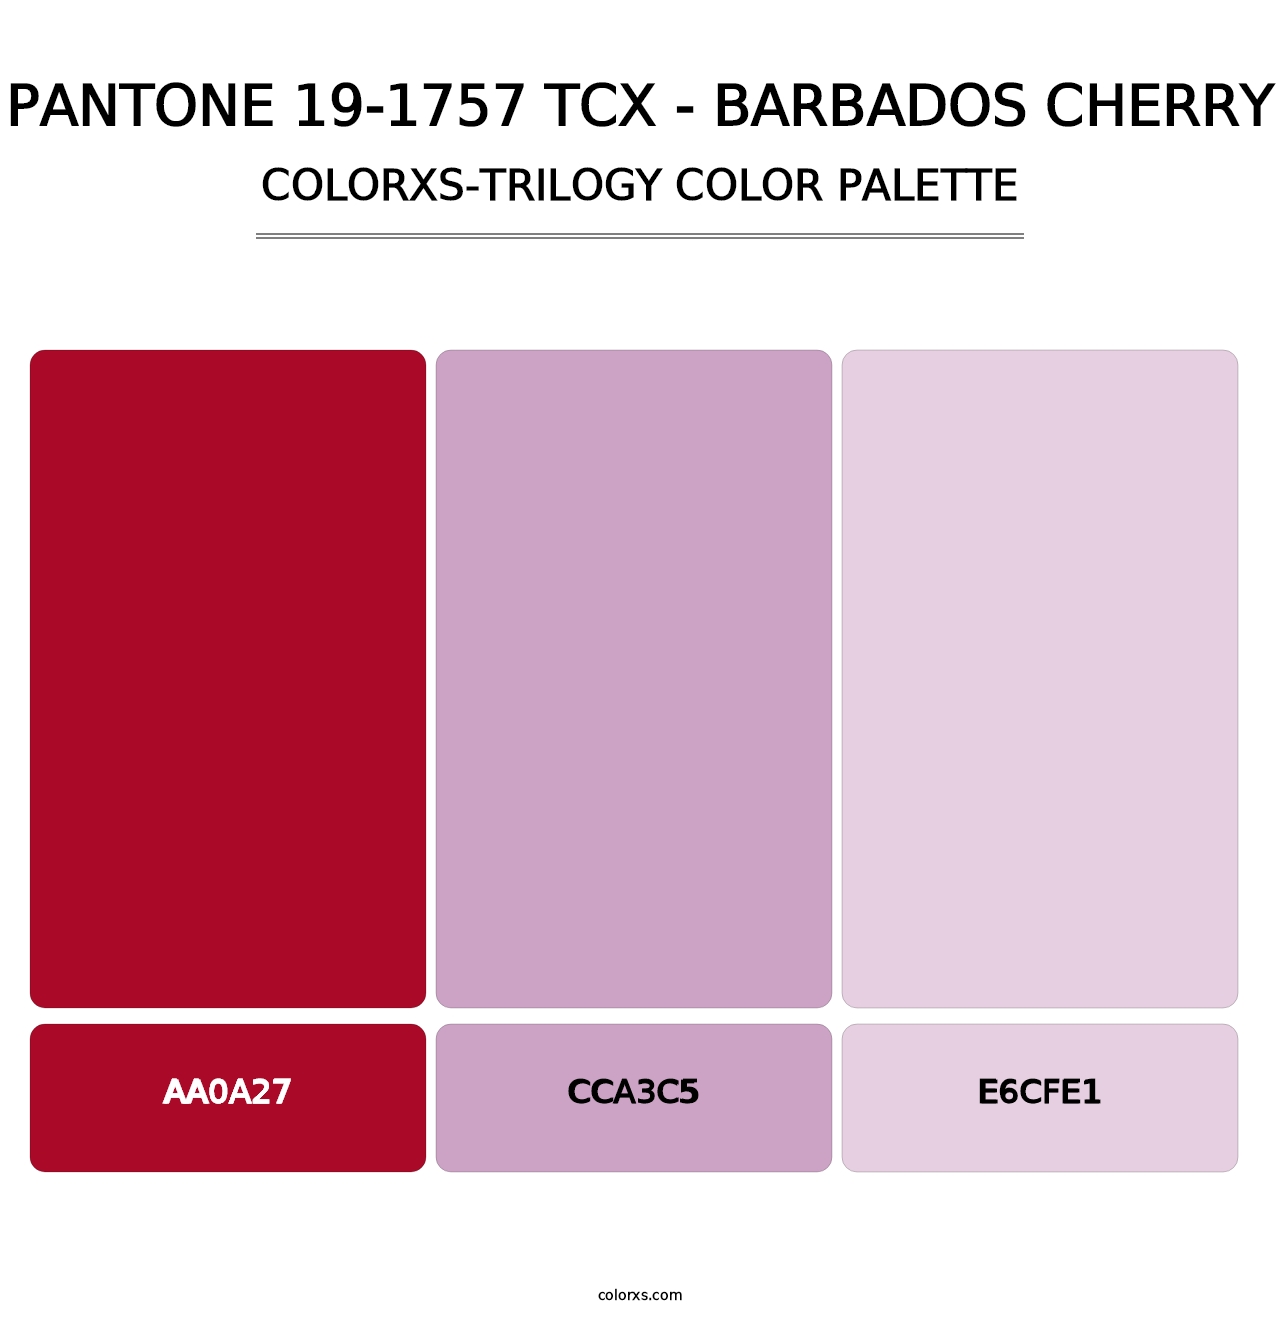 PANTONE 19-1757 TCX - Barbados Cherry - Colorxs Trilogy Palette